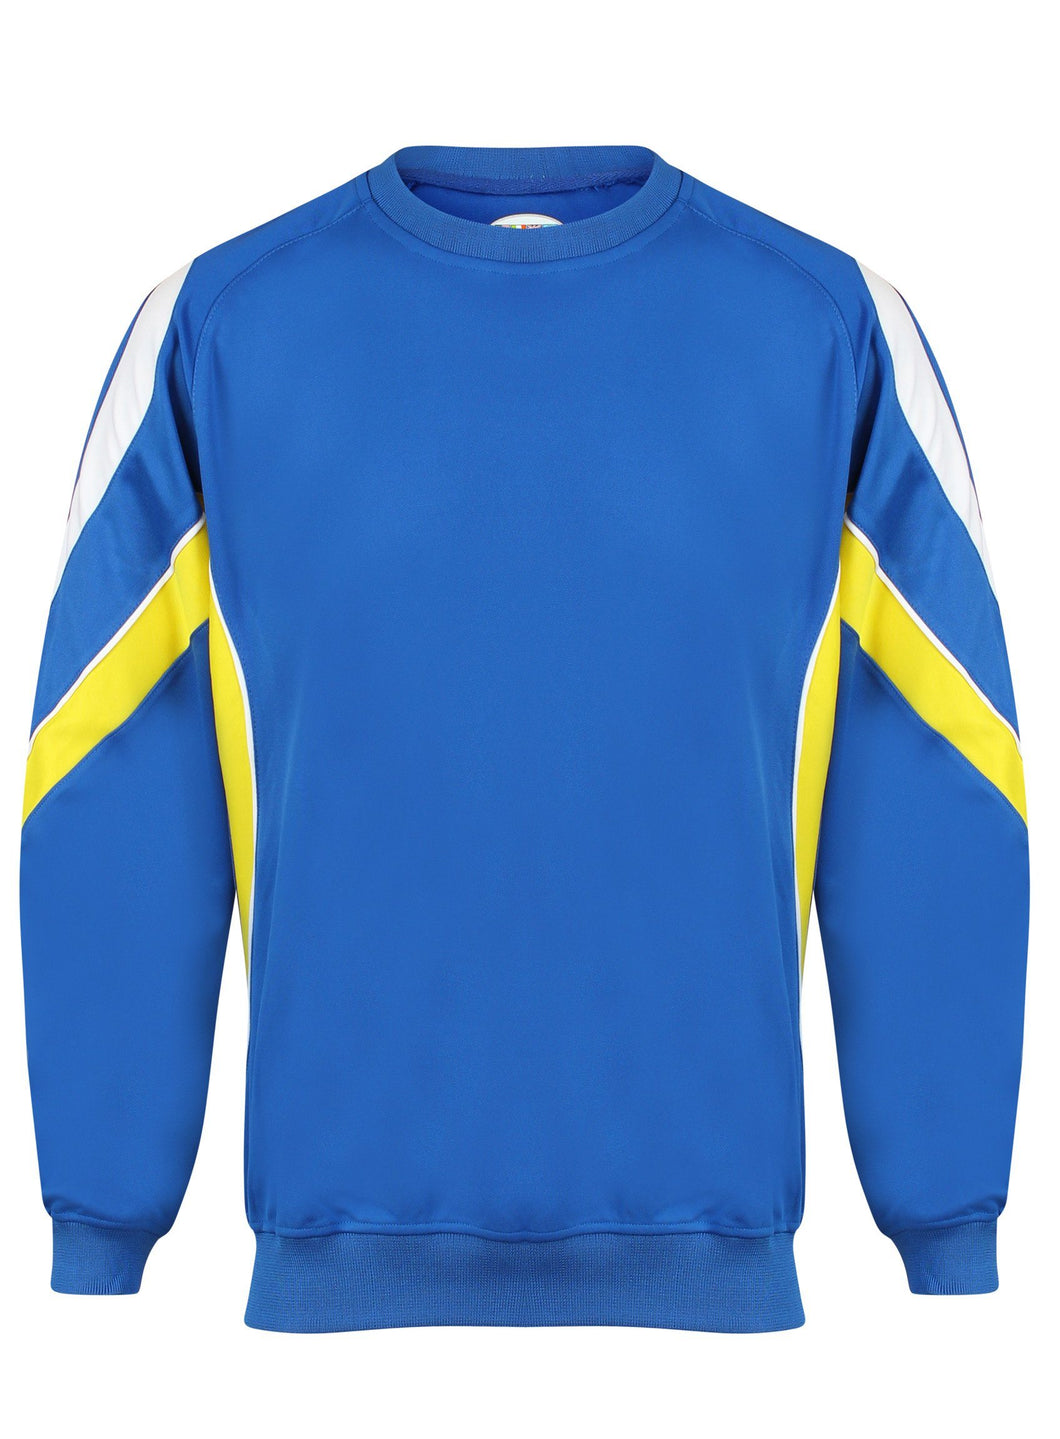 Rio Sweatshirt Kids Gazelle Sports UK Yes XSJ/26 Col A) Royal/ Yellow/ White